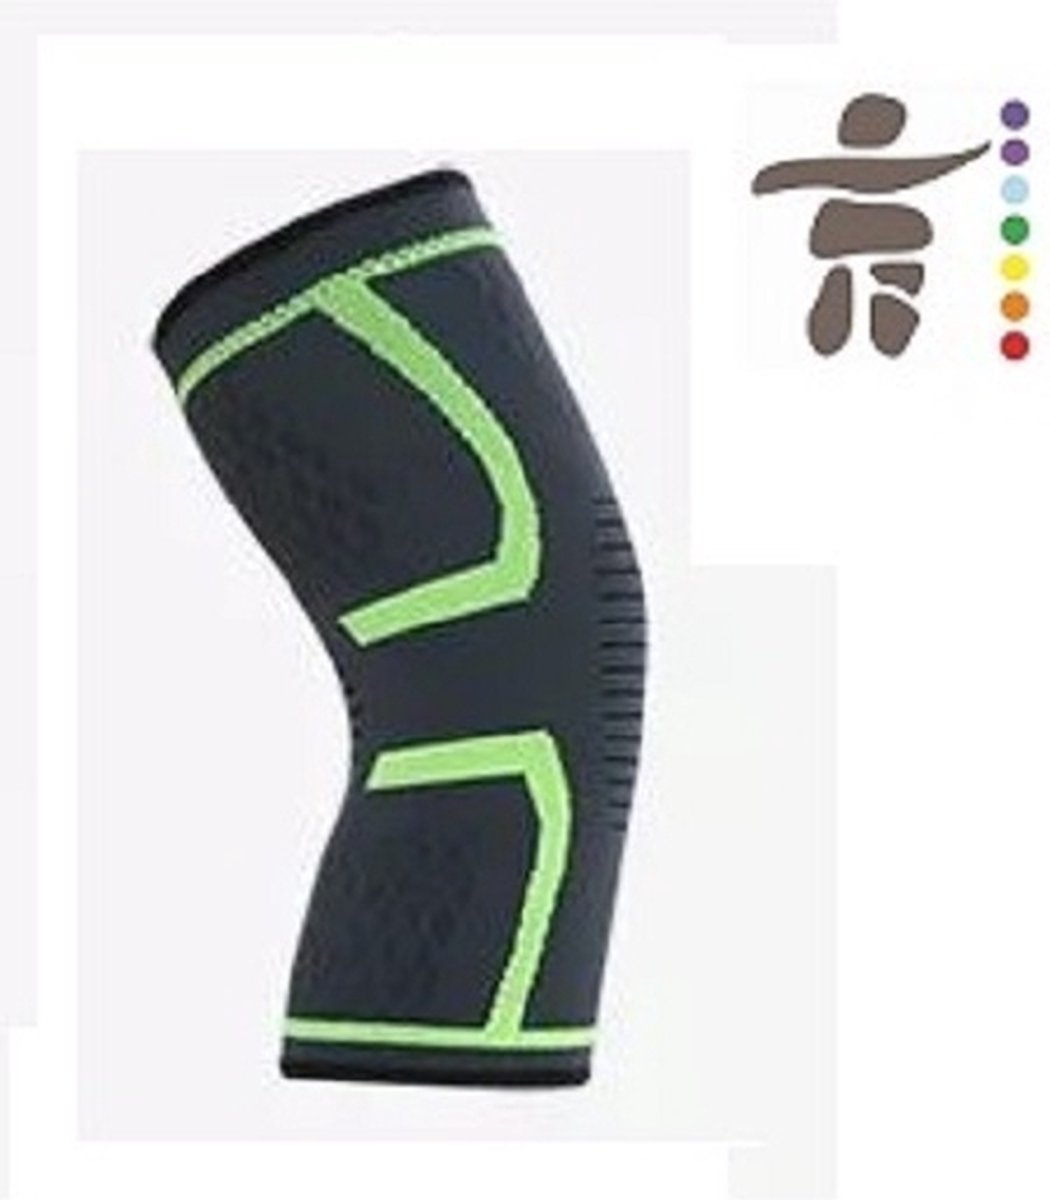 Elastische Knieband Kniebrace - Zwart met groene Rand - Maat XL - verkrijgbaar in S/M/L/XL check de maattabel - Strak en Comfortabele steun - Knie compressie - Steun kniebanden - kniebescherming - Elastisch kous voor om je knie